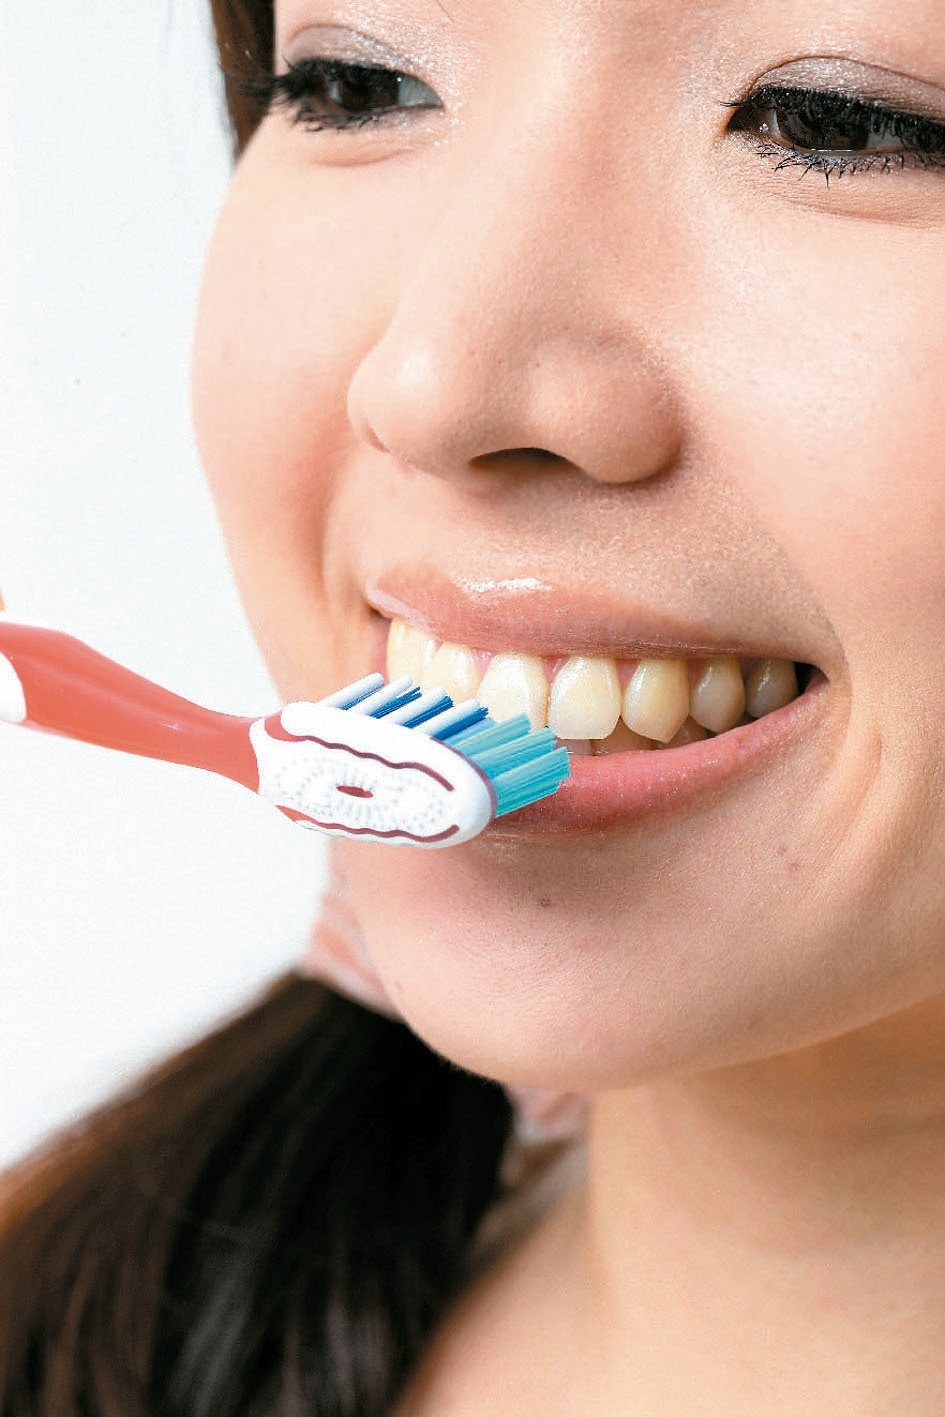 不少人明明刷牙刷得很勤，卻常有牙齦發炎出血，甚至有些除了刷牙也用牙線清潔，但牙肉仍常出血。